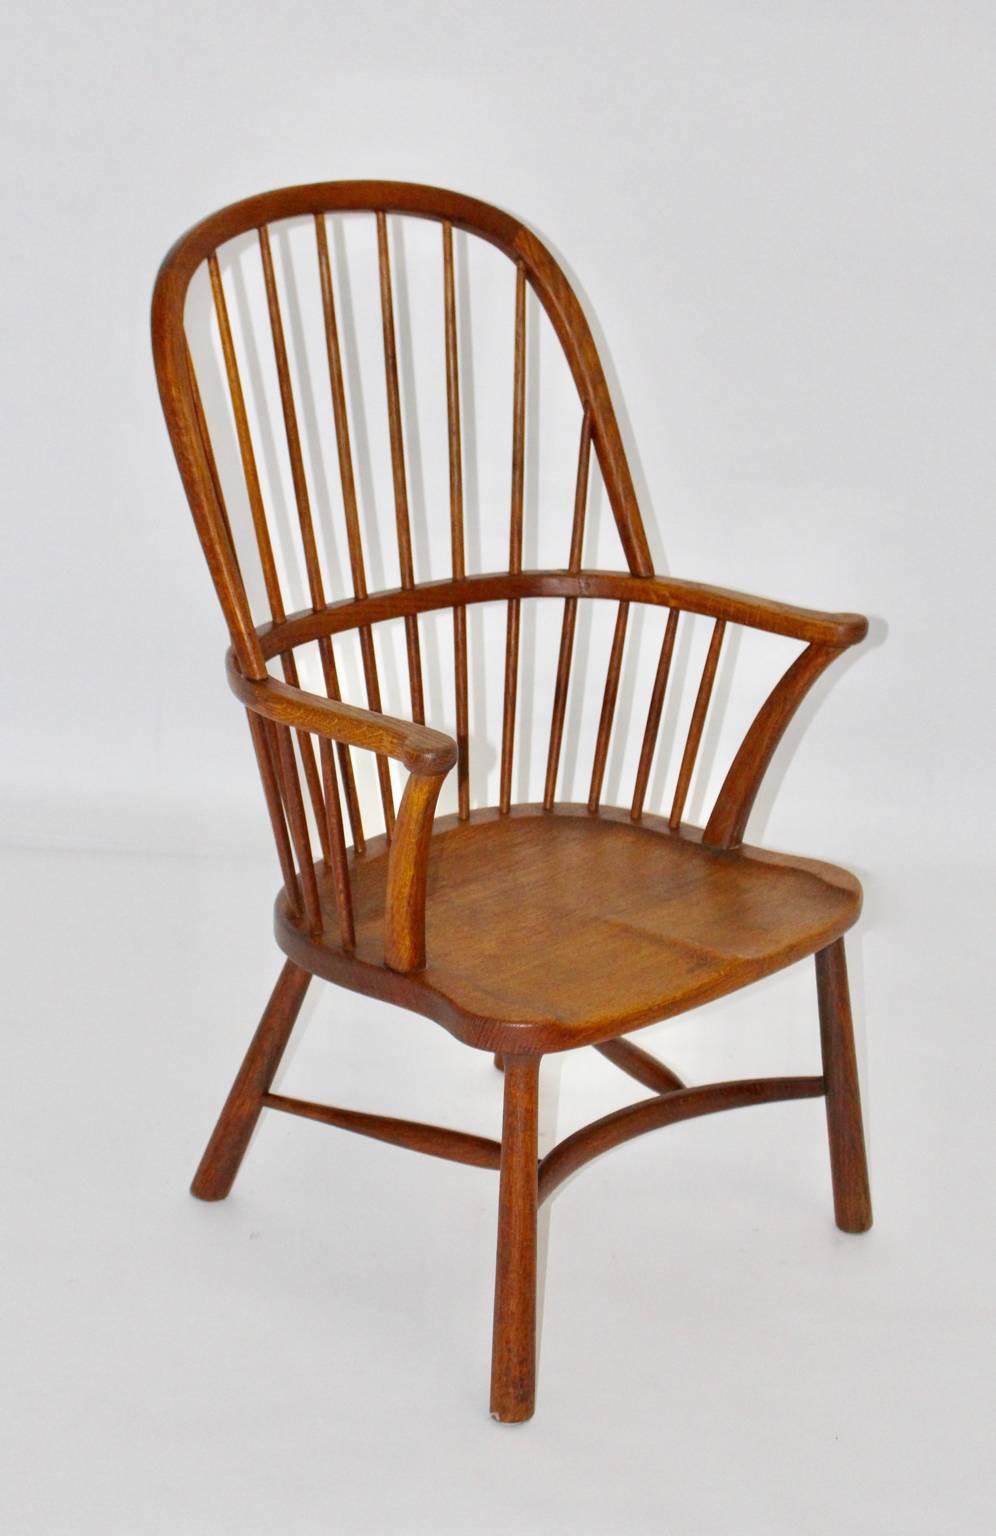 Art Deco Ära Windsor Stuhl Design zugeschrieben Walter Sobotka Wien 1932.
Der WIndsor Stuhl aus massivem Eichenholz hat einen Sattelsitz und konische Füße. 

Walter Sobotka (1888 Wien - 1972 New York) hat 1929 und auch von 1932 - 1934 eine führende